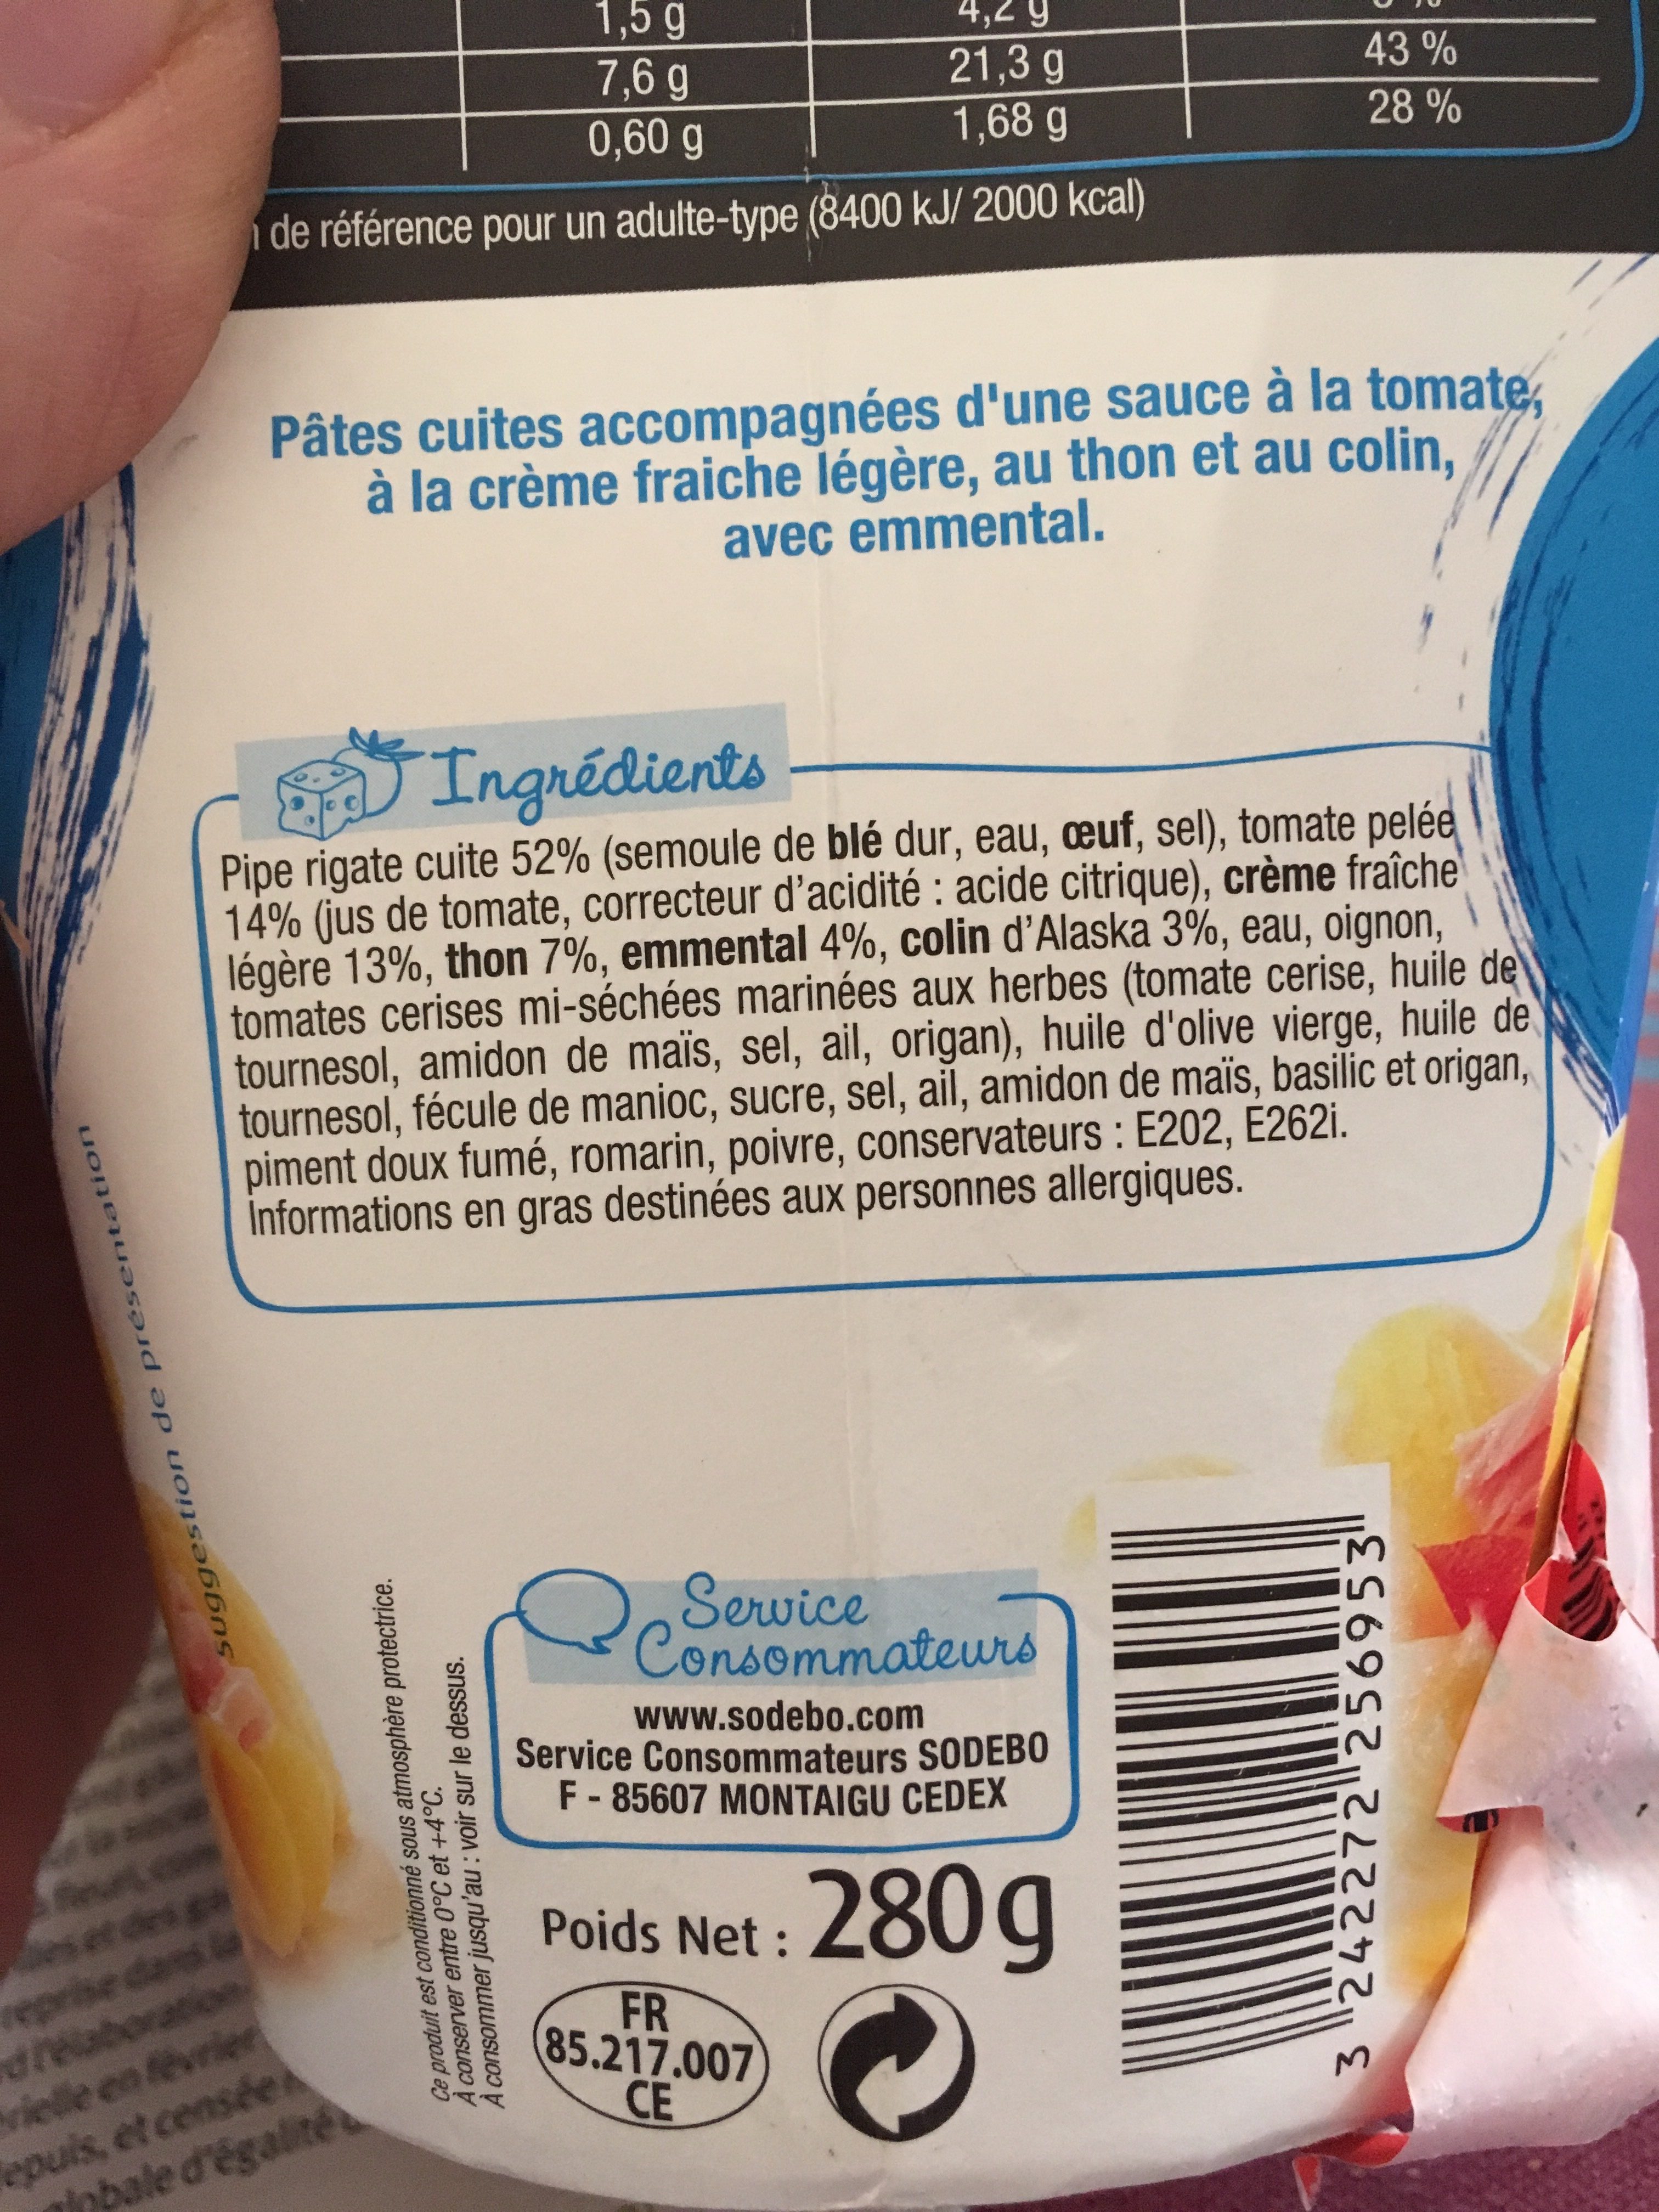 CremioBox - Thon à la crème - Ingrediënten - fr